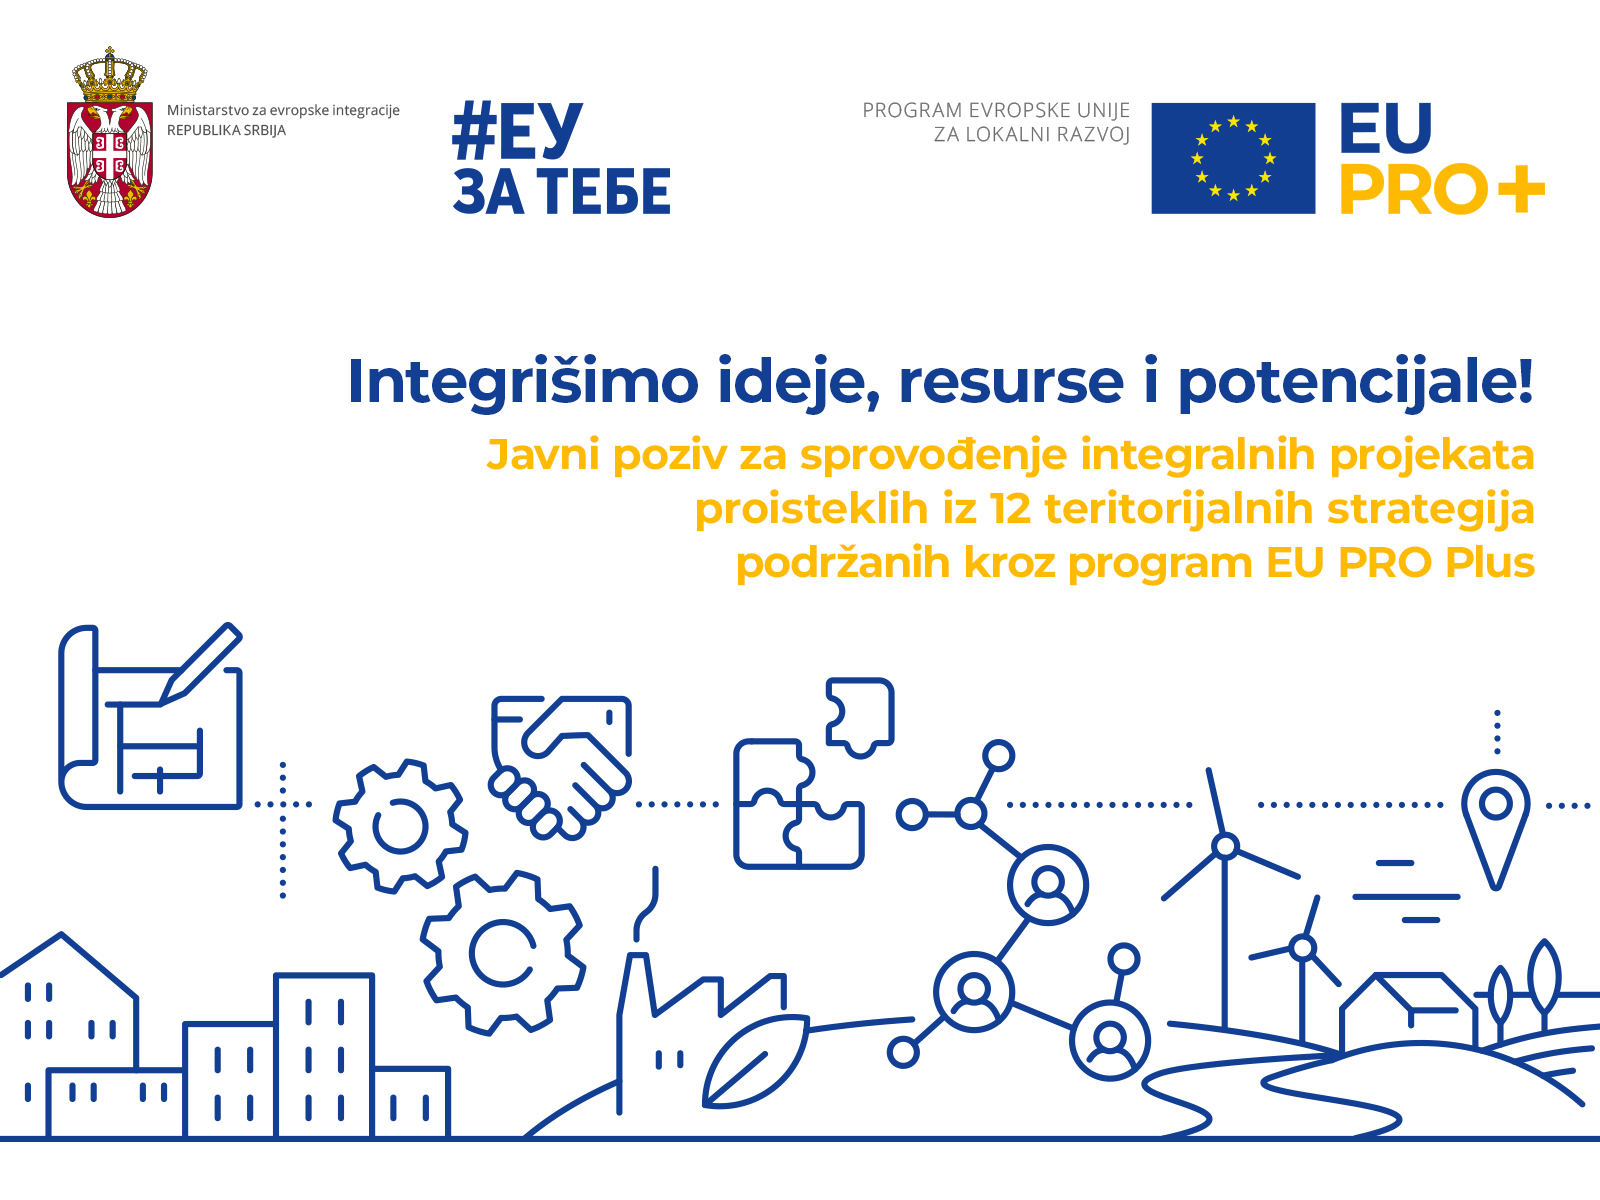 ЕУ ПРО Плус представља Јавни позив за спровођење интегралних пројеката проистеклих из 12 територијалних стратегија подржаних кроз програм 